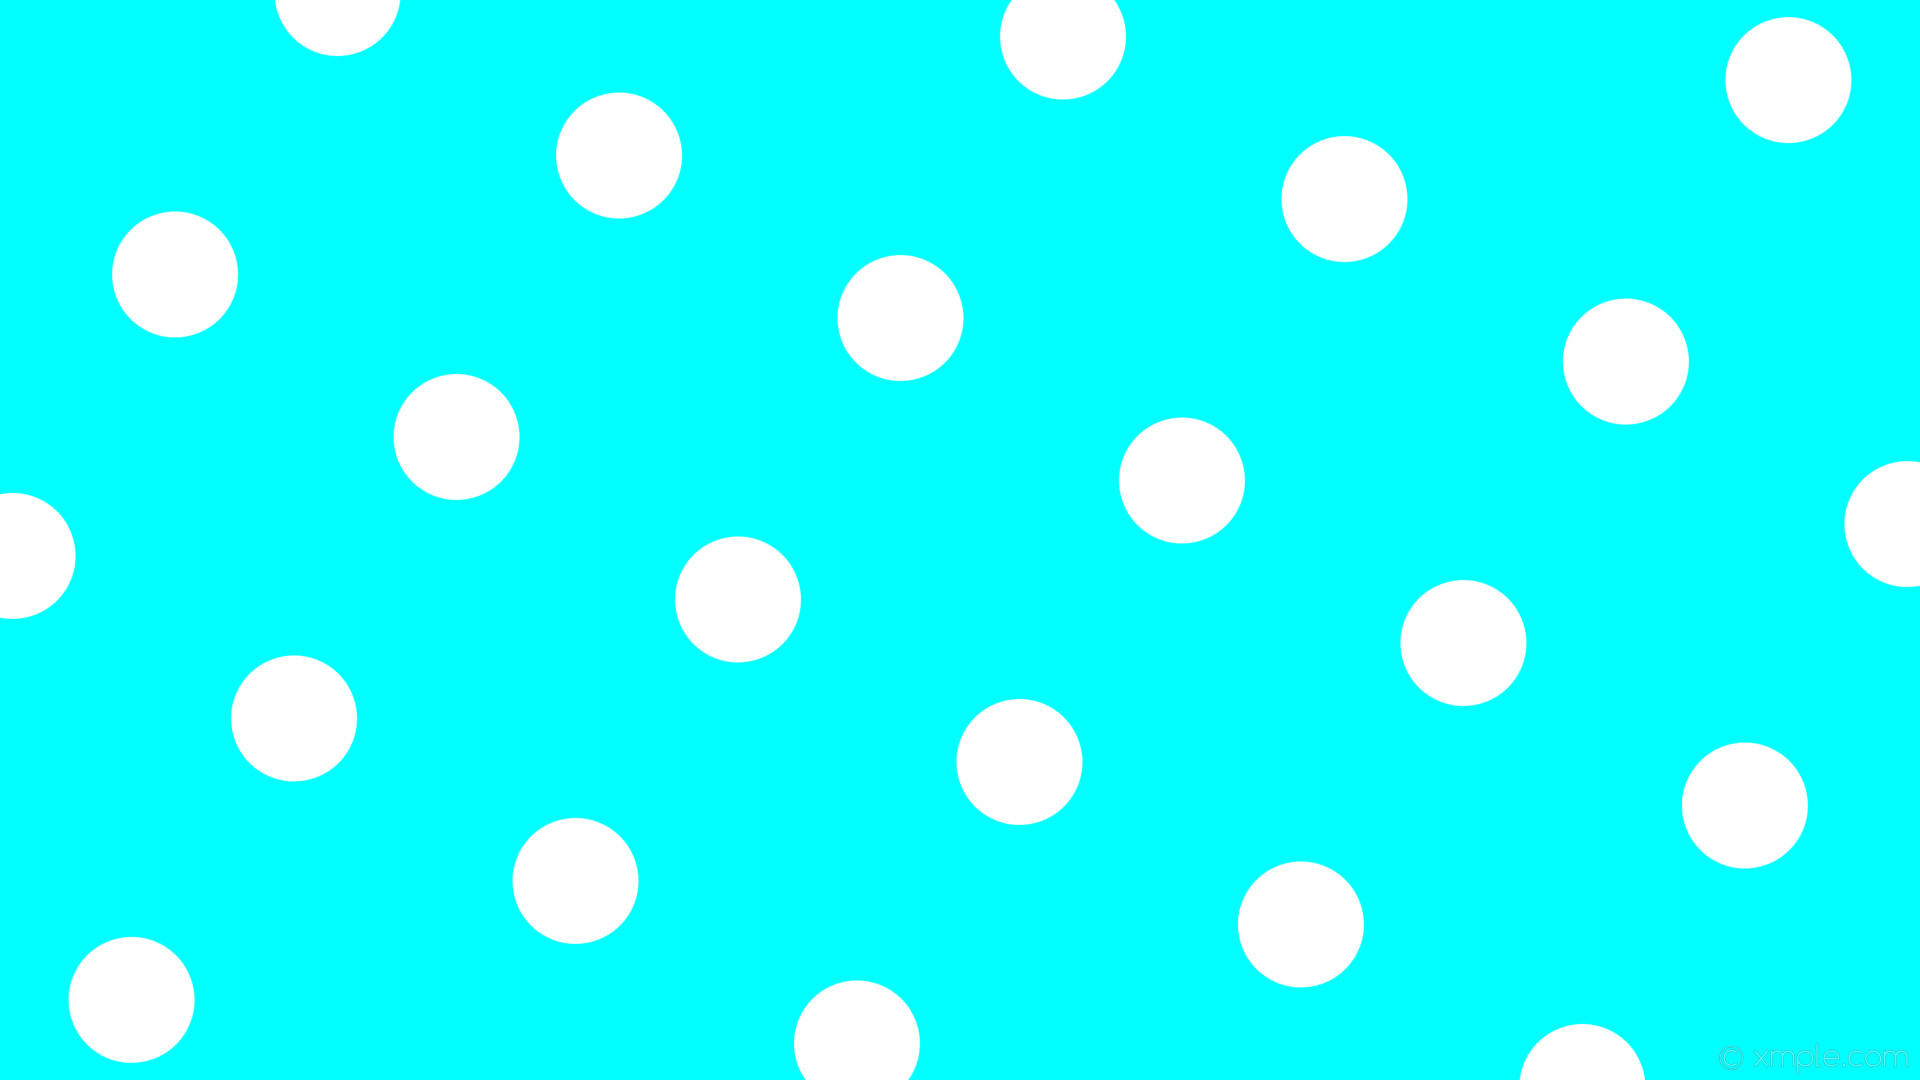 Wallpaper spots blue white polka dots aqua cyan ffff #ffffff 150 126px 325px